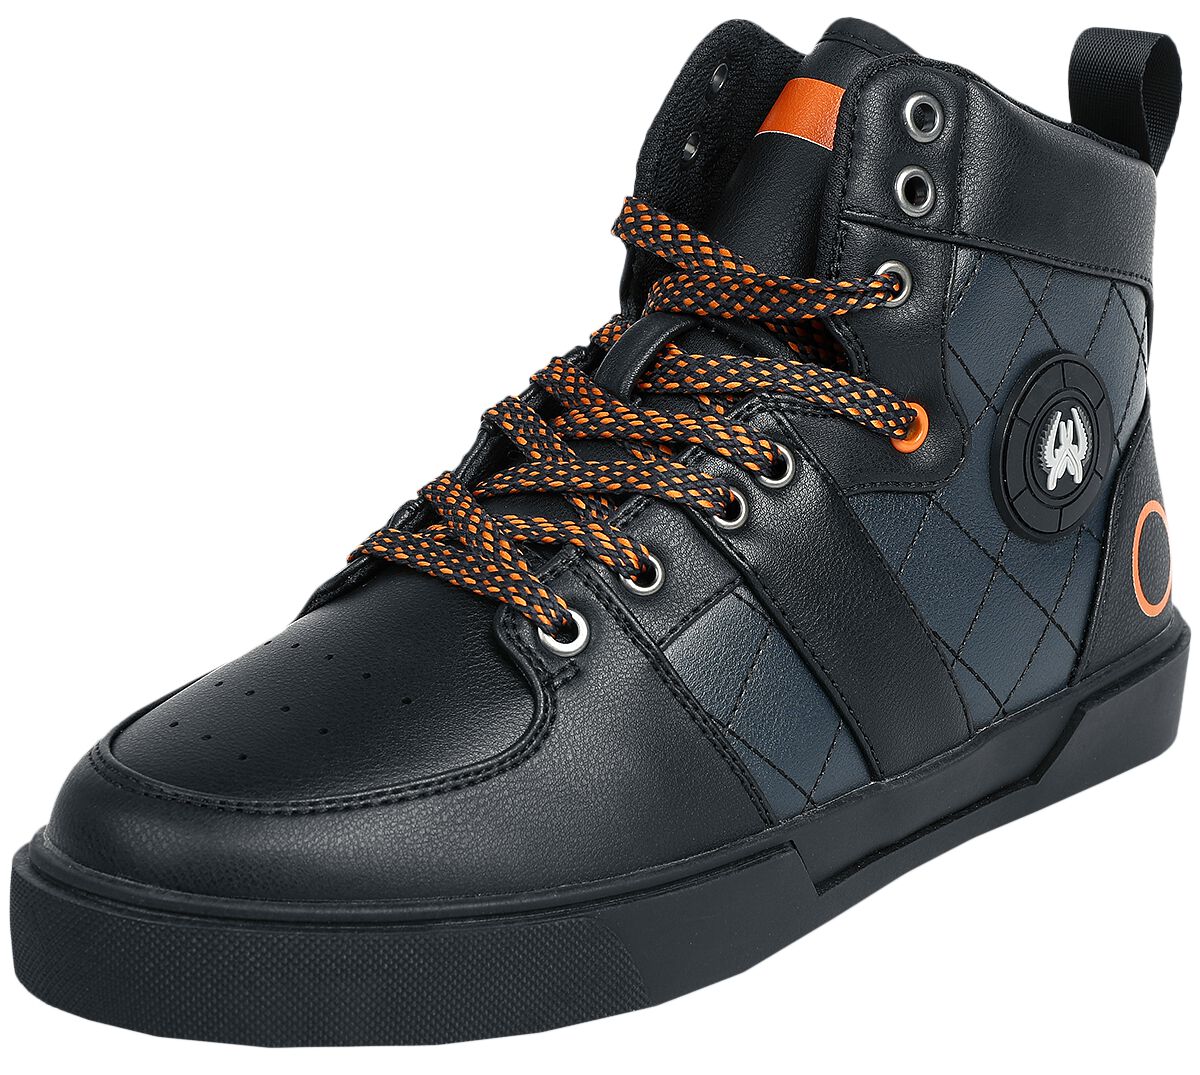 Counter-Strike - Gaming Sneaker high - Global Offensive - CS:GO - EU37 bis EU44 - Größe EU40 - schwarz/blau  - EMP exklusives Merchandise! von Counter-Strike